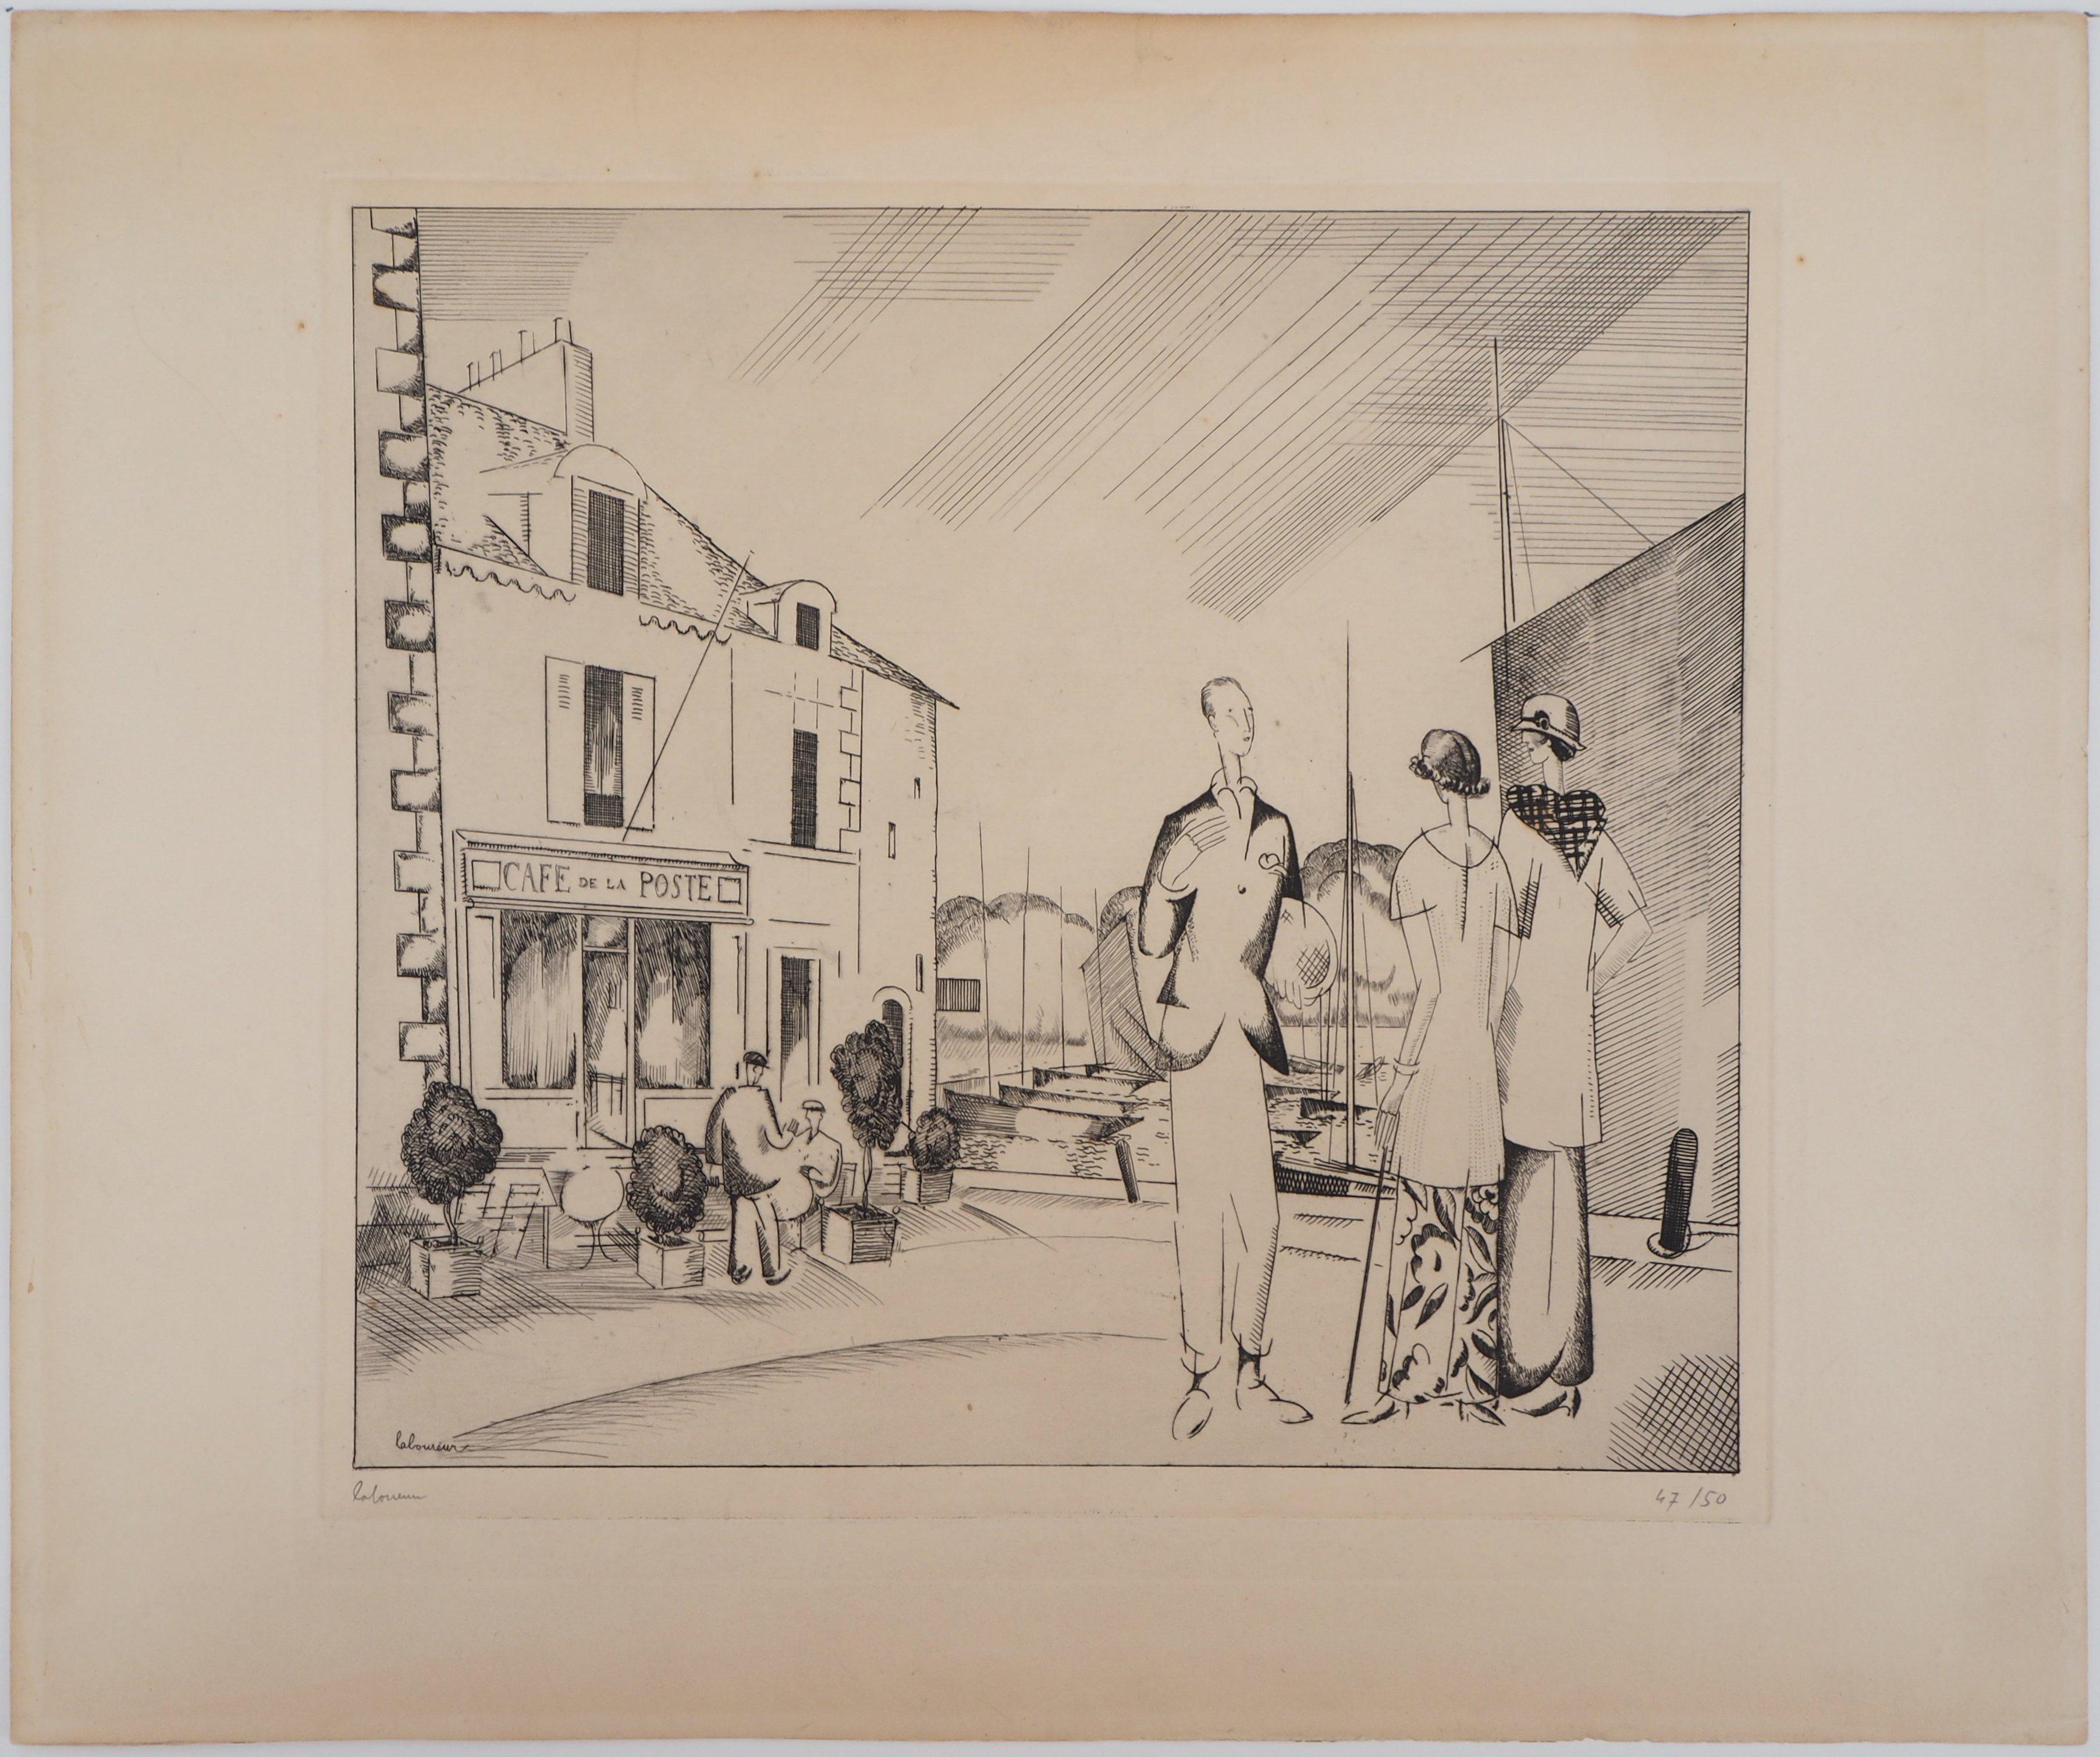 The Harbor Cafe – Original-Radierung, handsigniert – Print von Jean-Emile Laboureur